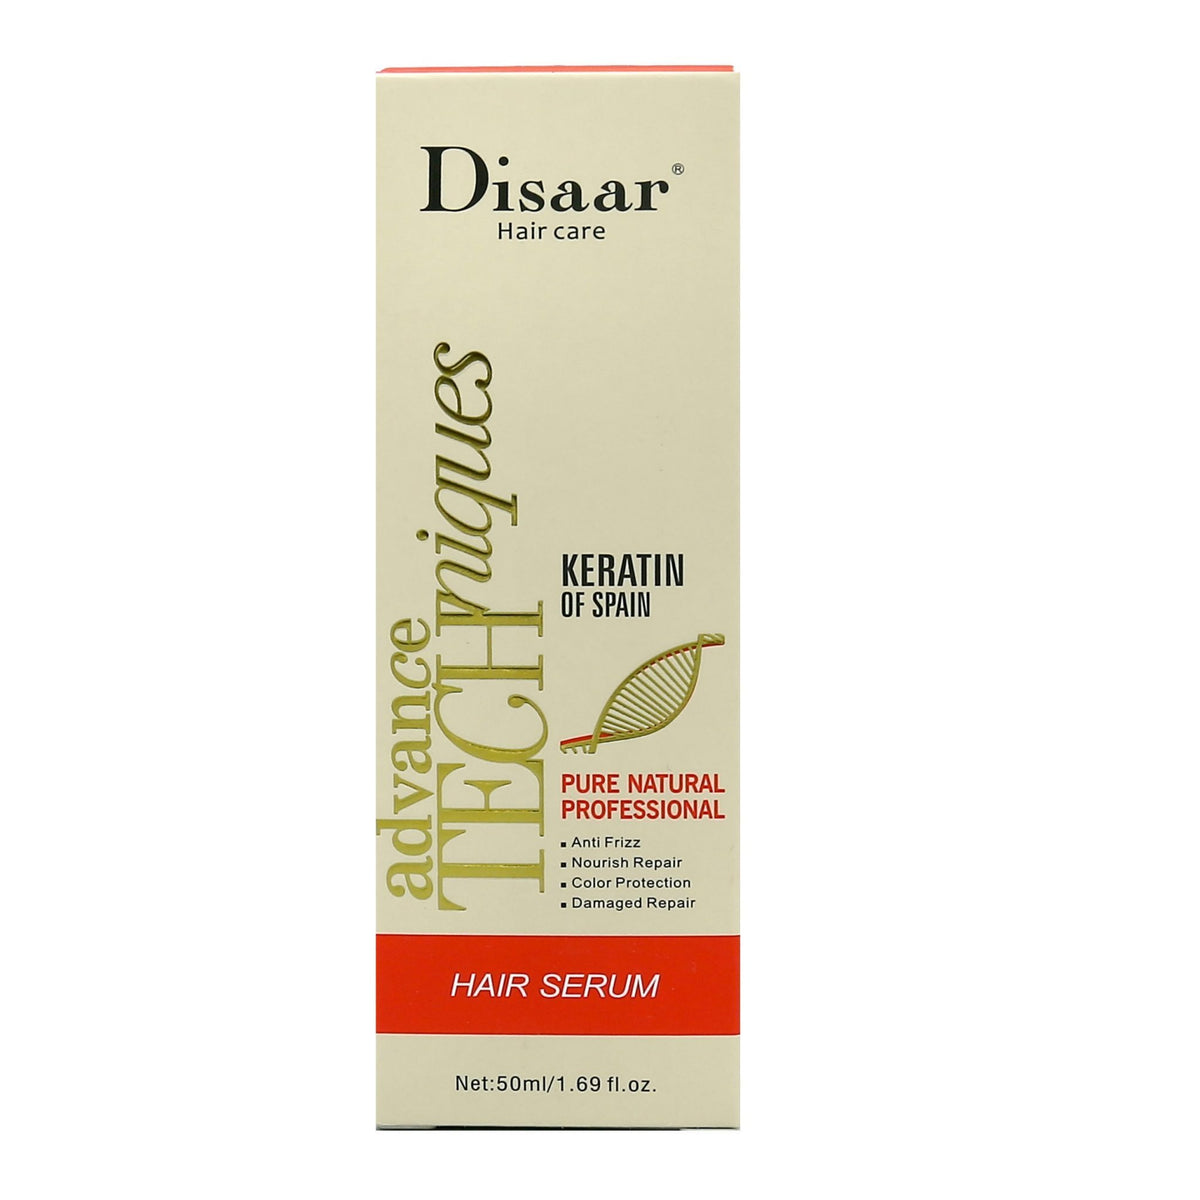 Disaar Hair Care Argan Oil of Spain Red Hair Serum Advance Techniquies 50ml freeshipping - lasertag.pk